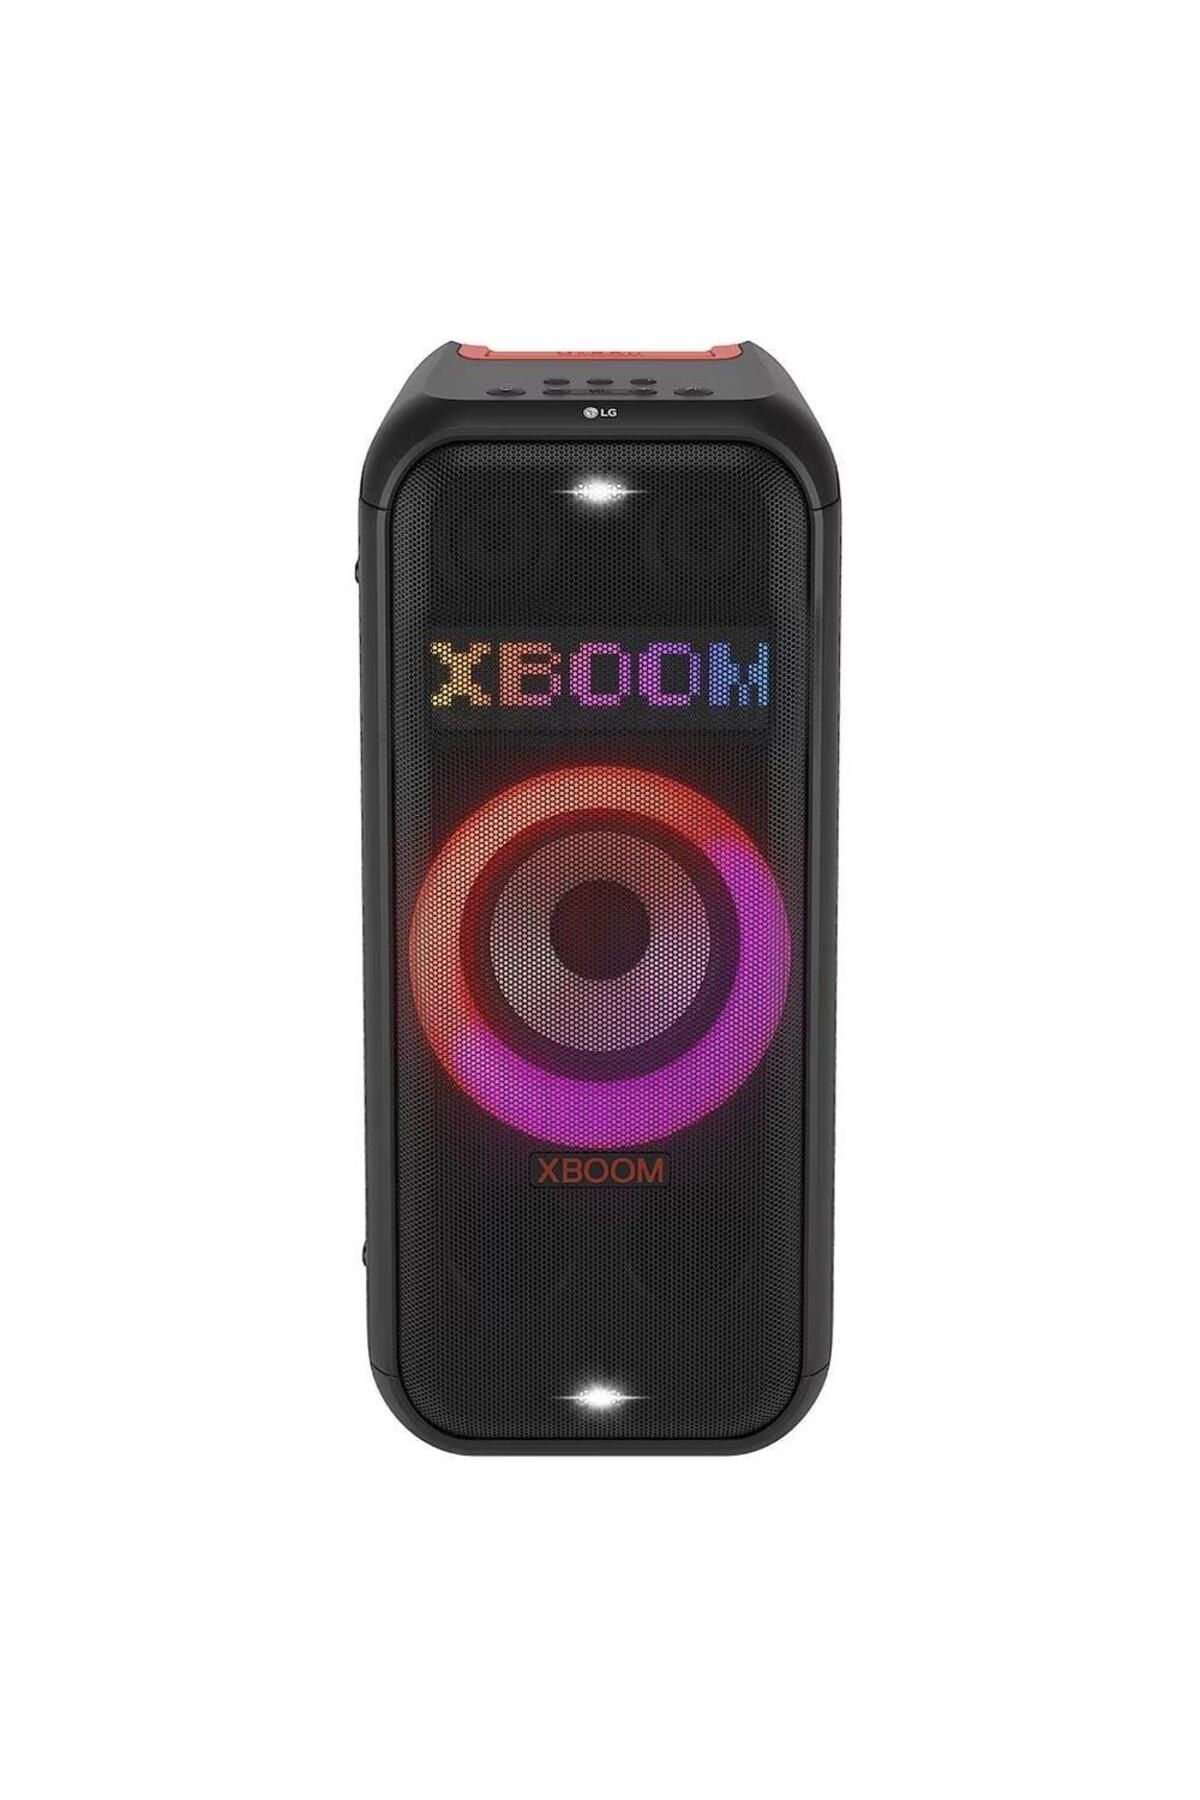 LG XBOOM Seri Karaoke Özellikli Taşınabilir Premium Parti Hoparlörü - 20 Saat Pil Ömrü